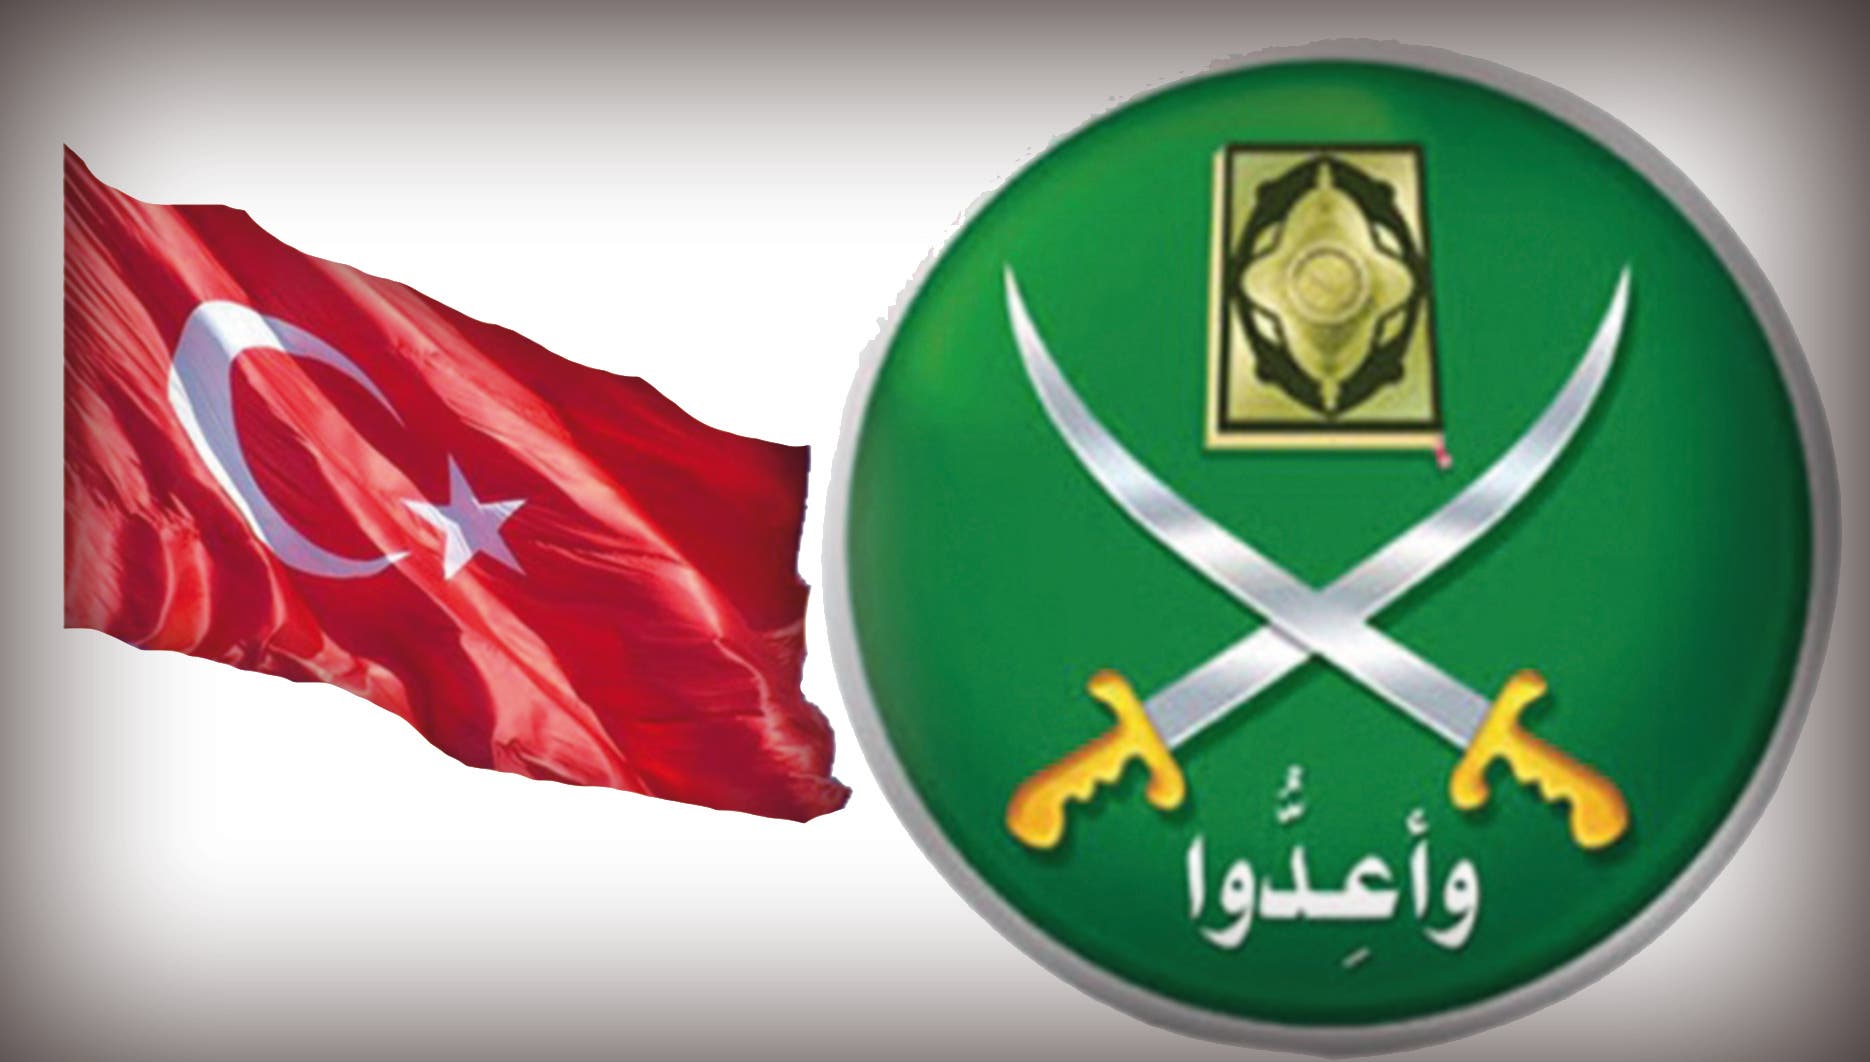 هروب مفاجئ.. قرار جديد لجماعة الإخوان المسلمين في تركيا